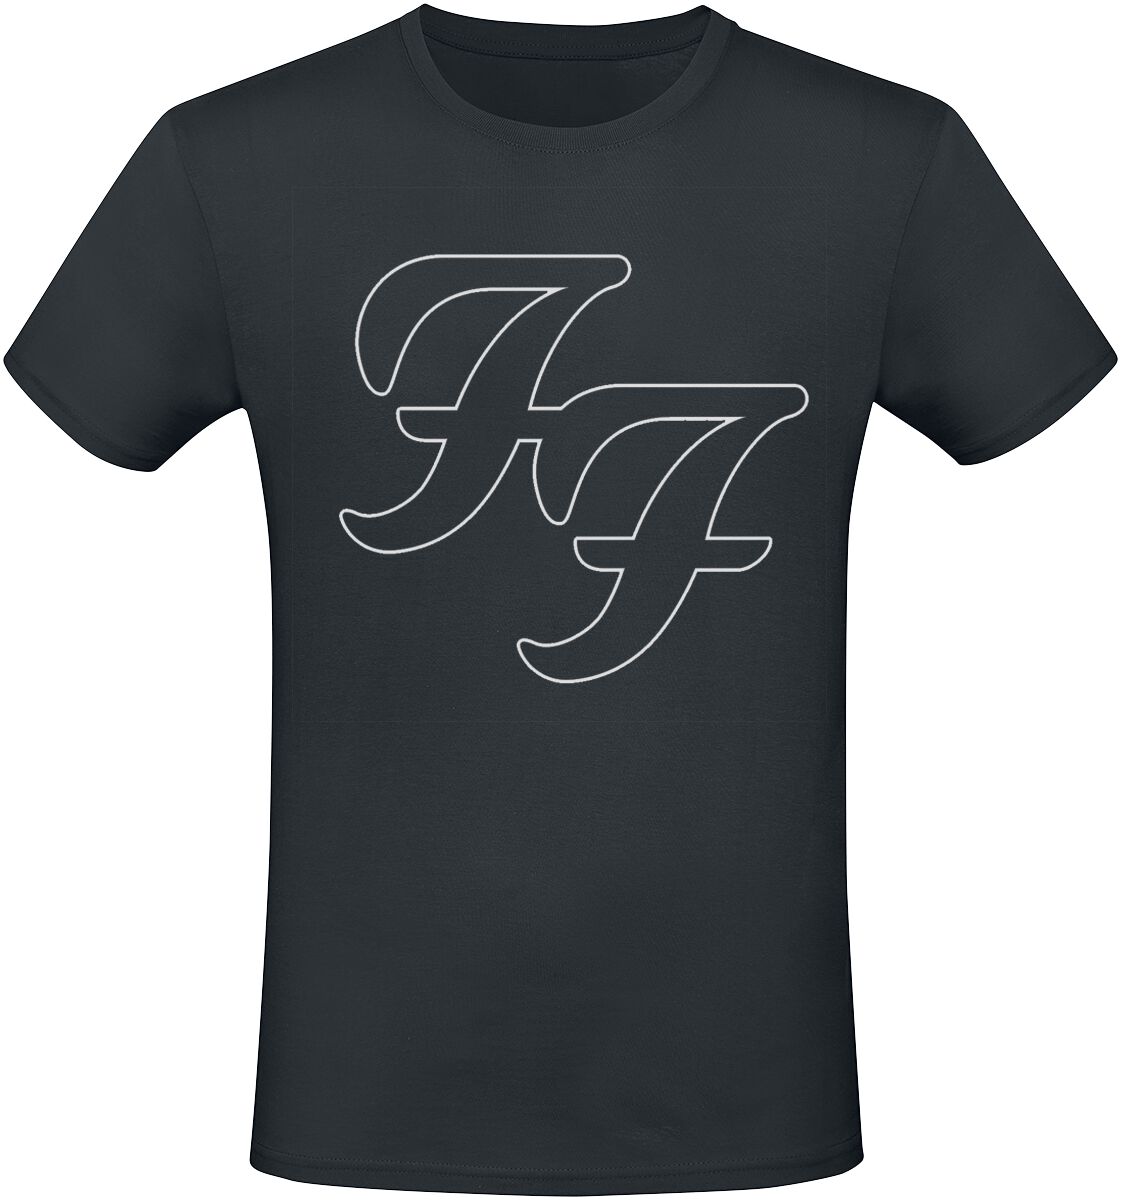 Foo Fighters T-Shirt - But Here We Are - S bis 3XL - für Männer - Größe L - schwarz  - Lizenziertes Merchandise!